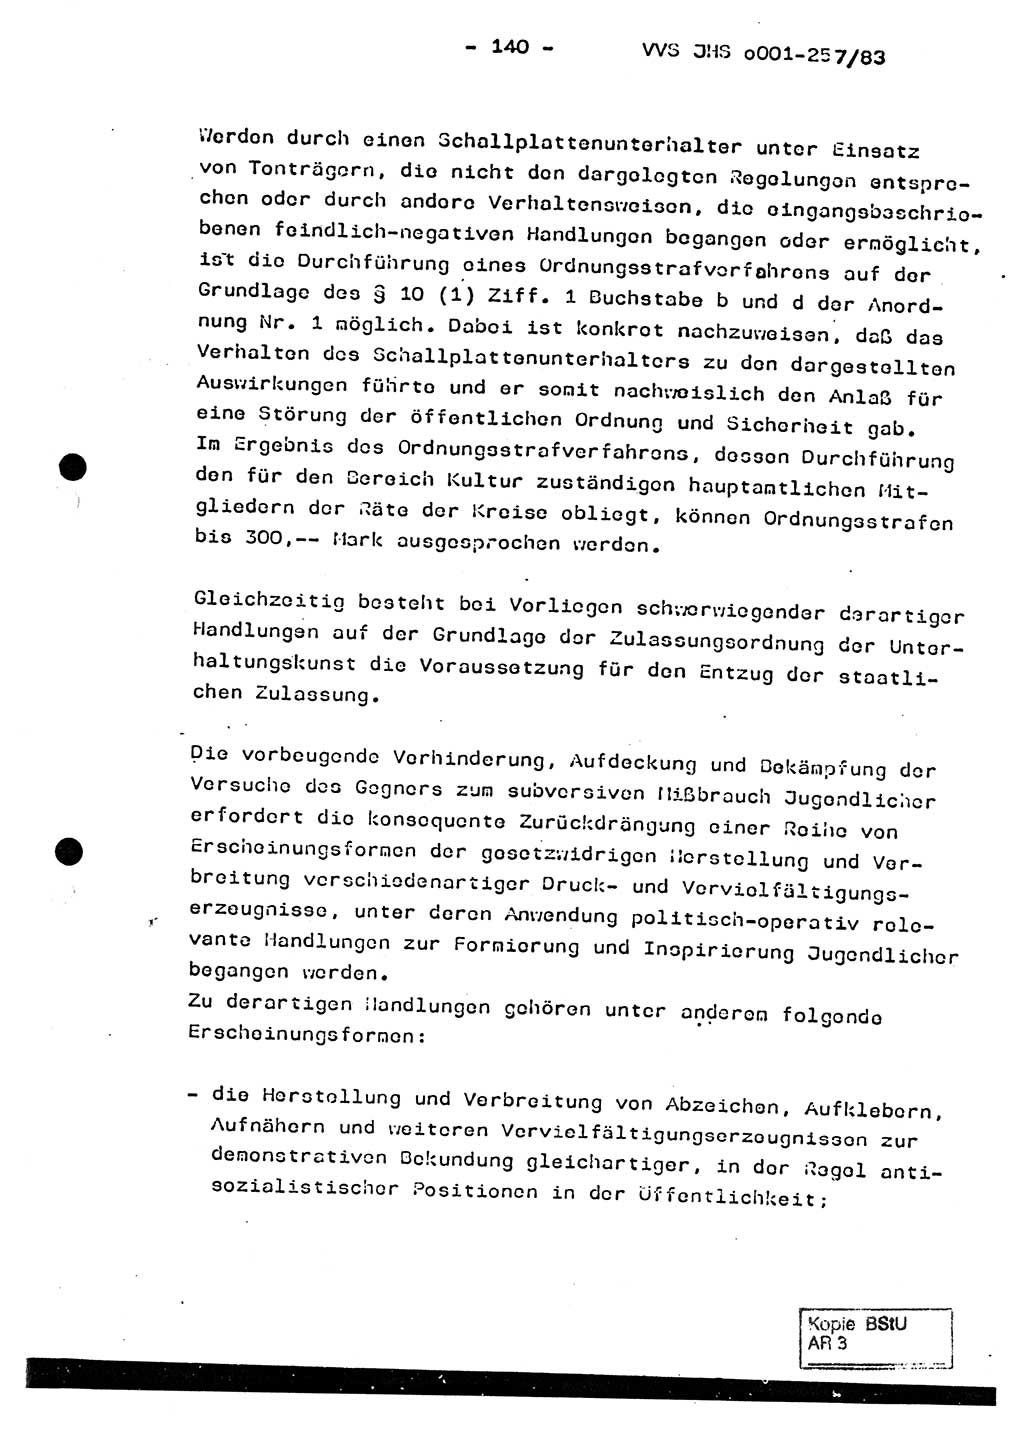 Dissertation, Oberst Helmut Lubas (BV Mdg.), Oberstleutnant Manfred Eschberger (HA IX), Oberleutnant Hans-Jürgen Ludwig (JHS), Ministerium für Staatssicherheit (MfS) [Deutsche Demokratische Republik (DDR)], Juristische Hochschule (JHS), Vertrauliche Verschlußsache (VVS) o001-257/83, Potsdam 1983, Seite 140 (Diss. MfS DDR JHS VVS o001-257/83 1983, S. 140)